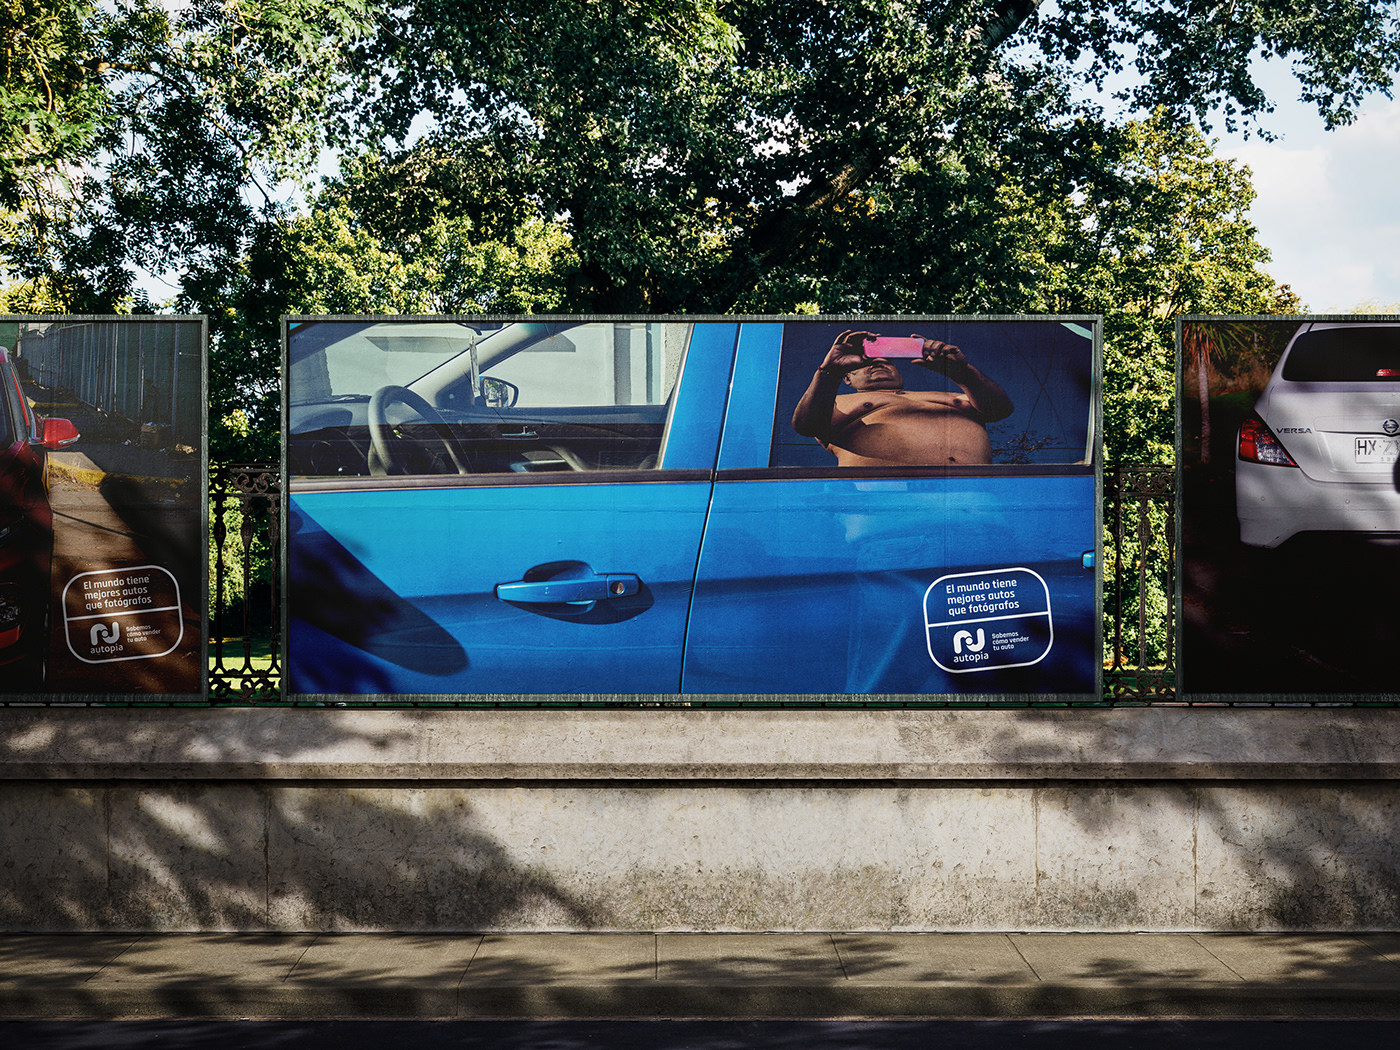 2024 design Advertising  campaing car tvc Campaña publicidad marketing   Creativity